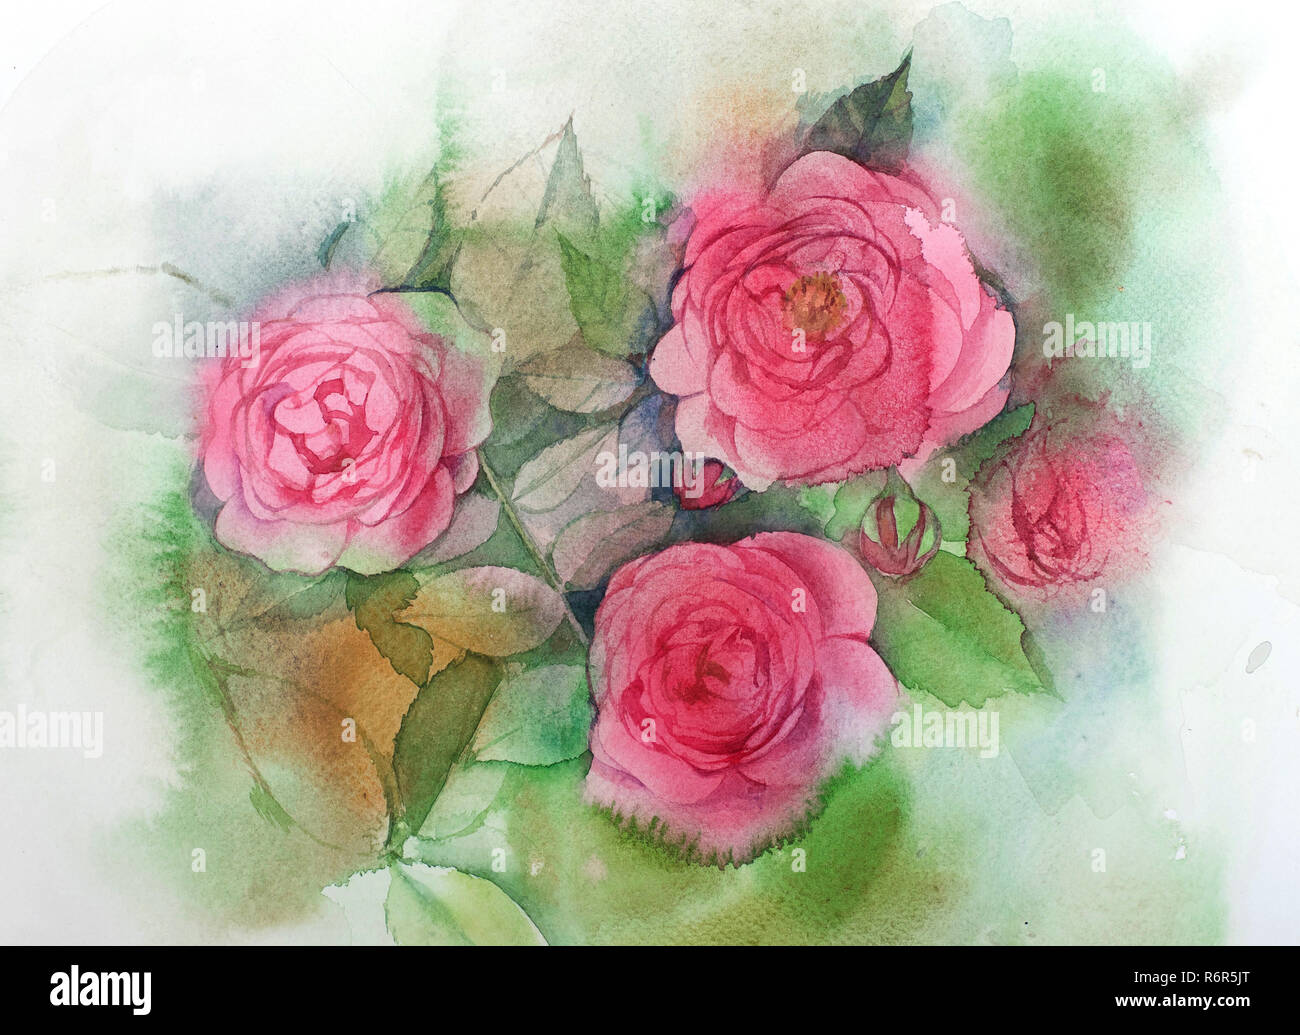 Đây là một tác phẩm tranh vẽ hoa hồng cực đẹp, nét vẽ rất lụa phải, những bông hoa được thể hiện cực kỳ chân thực. Tôi chắc chắn rằng khi bạn xem bức tranh này, bạn sẽ cảm thấy tràn đầy niềm yêu thương và sự tinh tế.